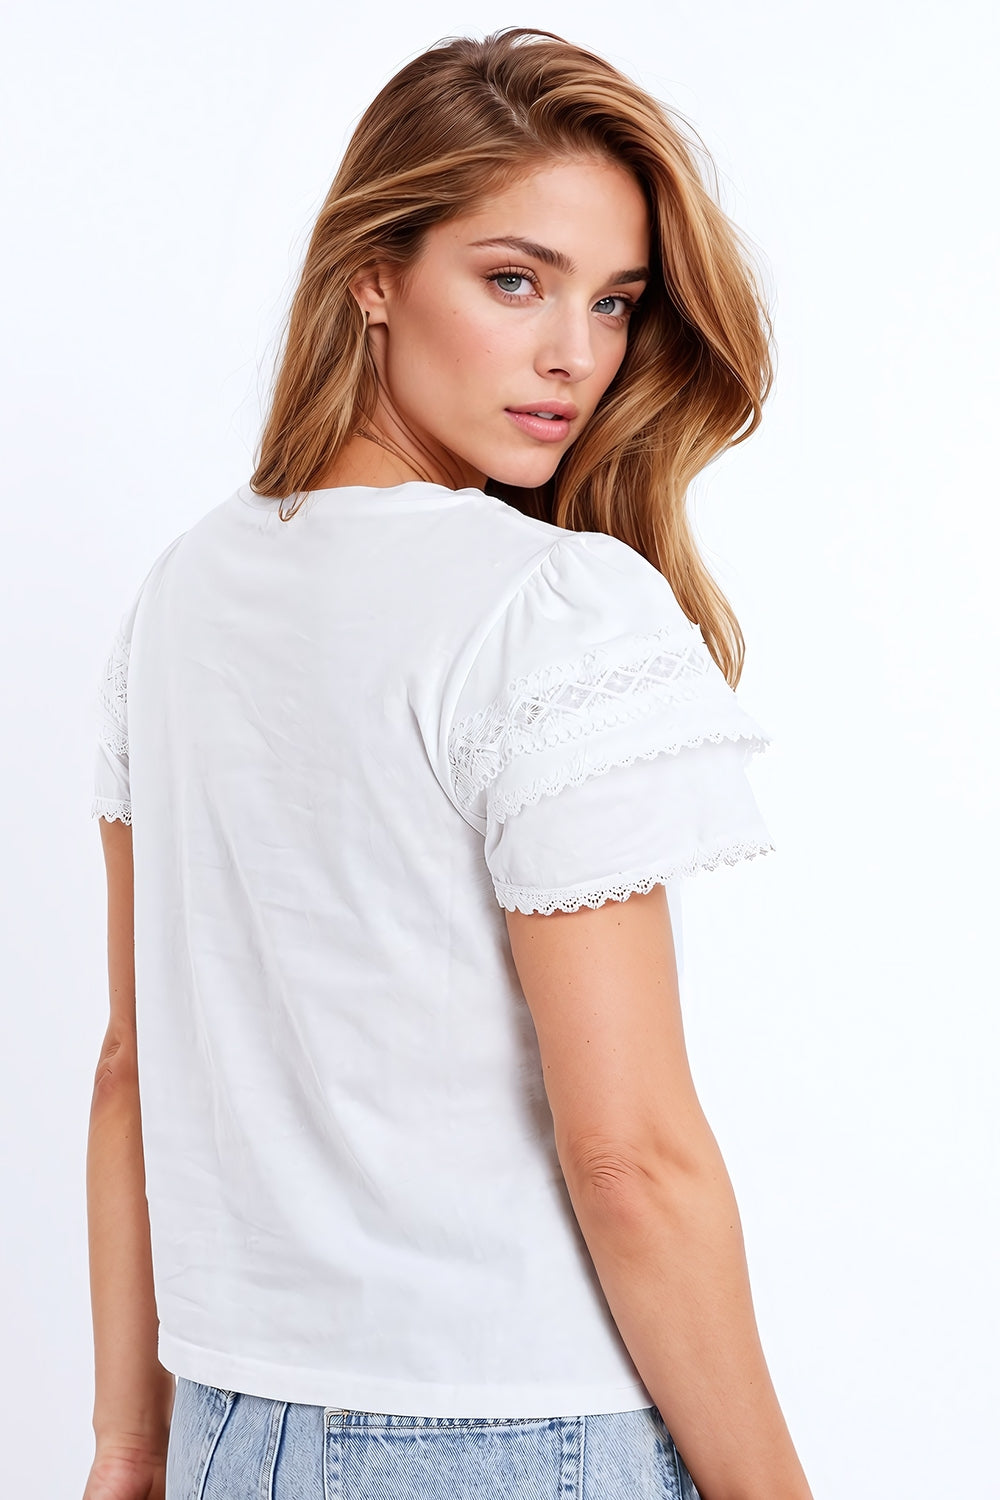 T-shirt bianca con maniche arricciate a doppio strato.